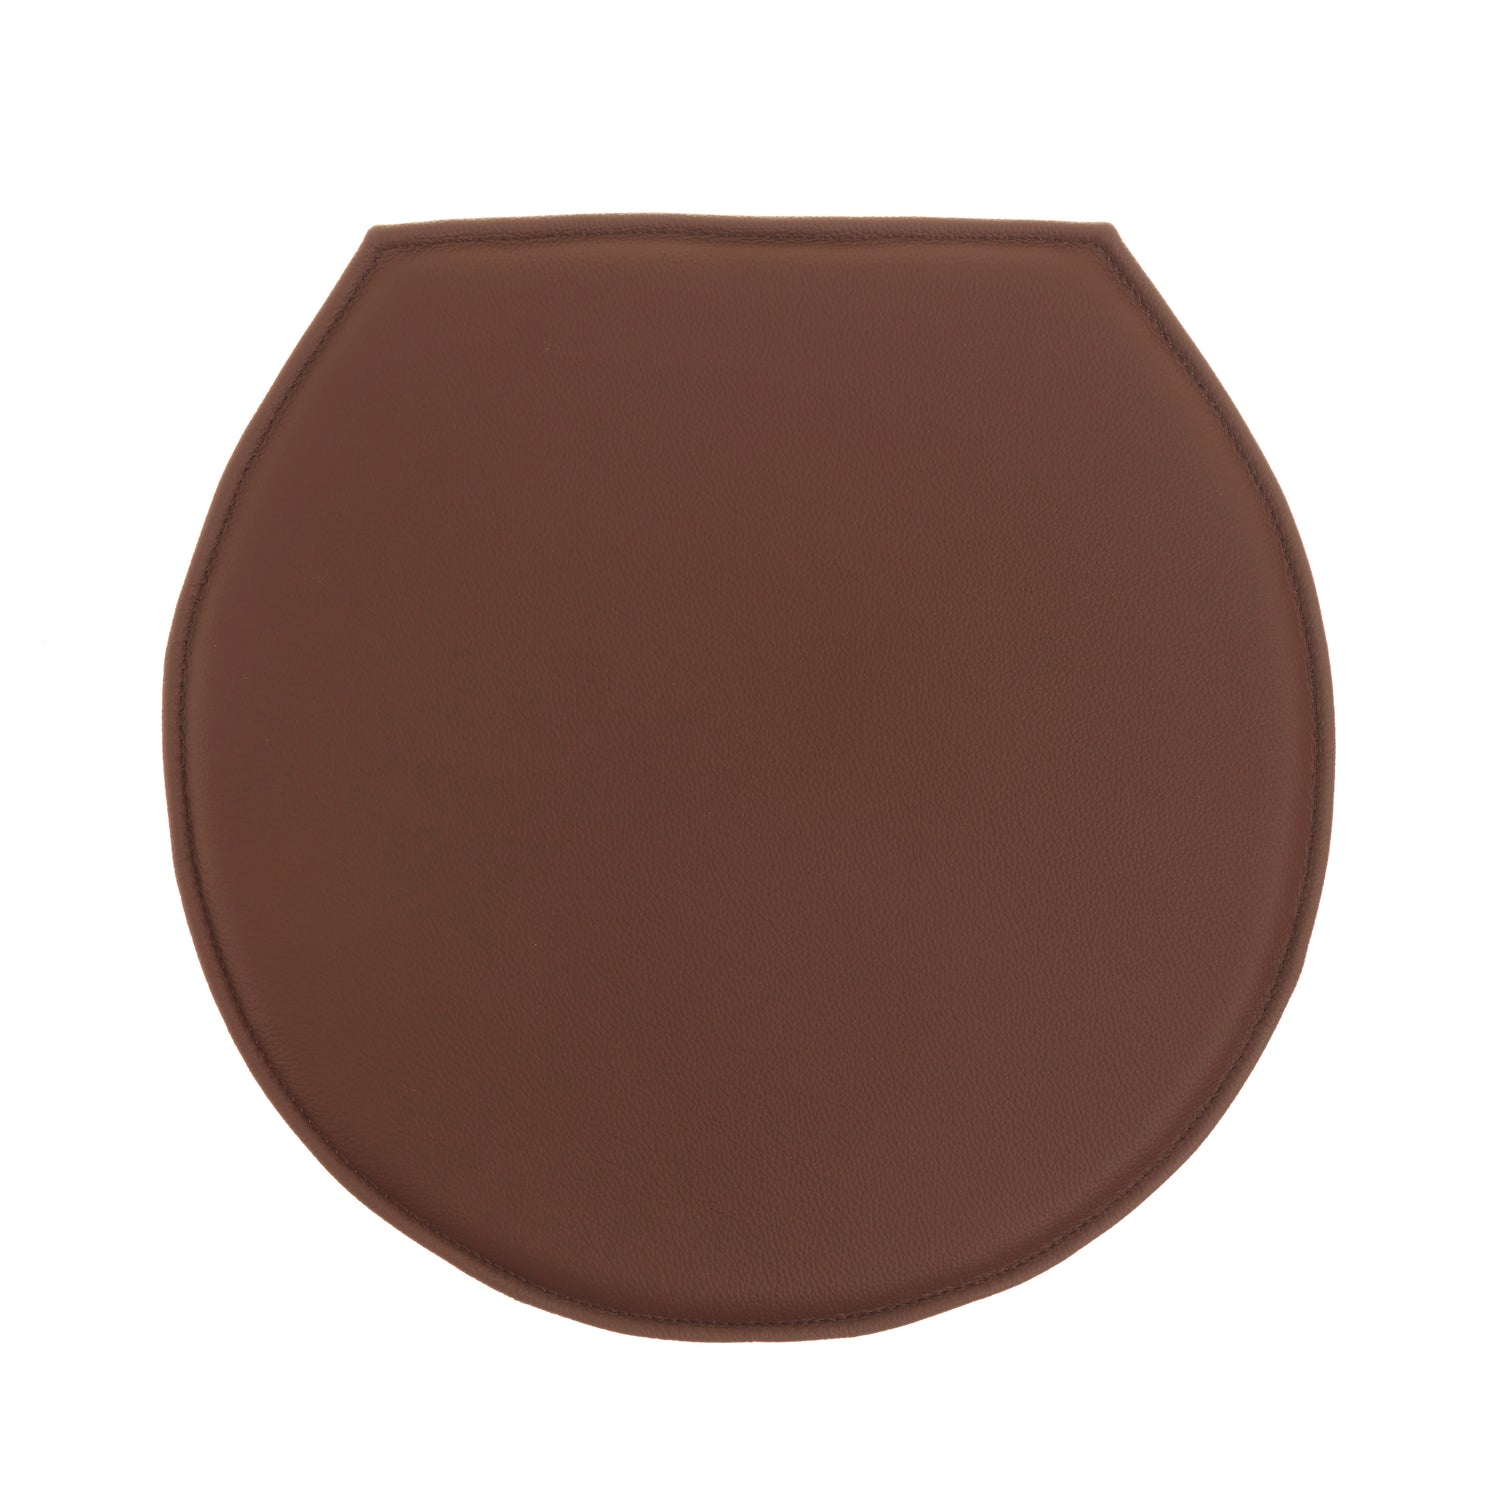 Almofada de luxo para Arne Jacobsen Ant (3100 + 3101) em couro marrom escuro